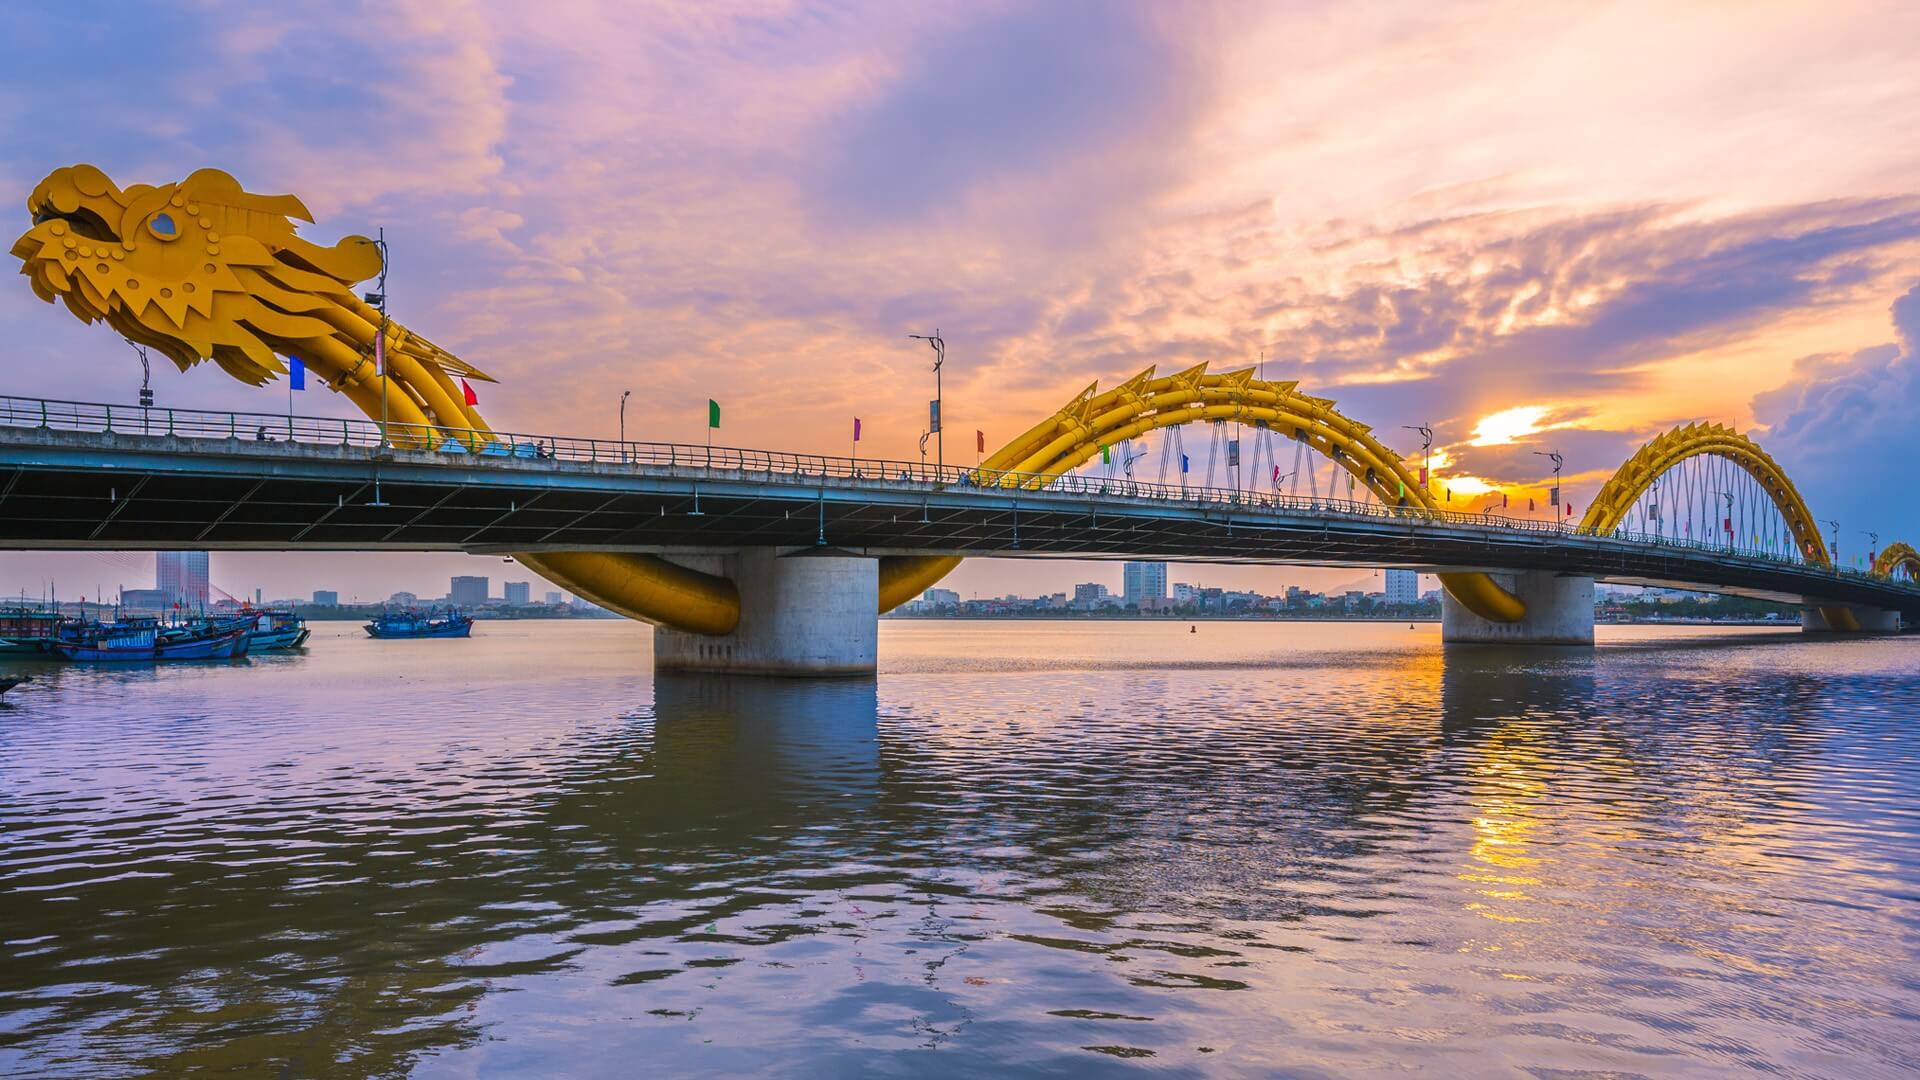 Khám phá cầu Rồng Đà Nẵng - Biểu tượng mới của thành phố | Money24h